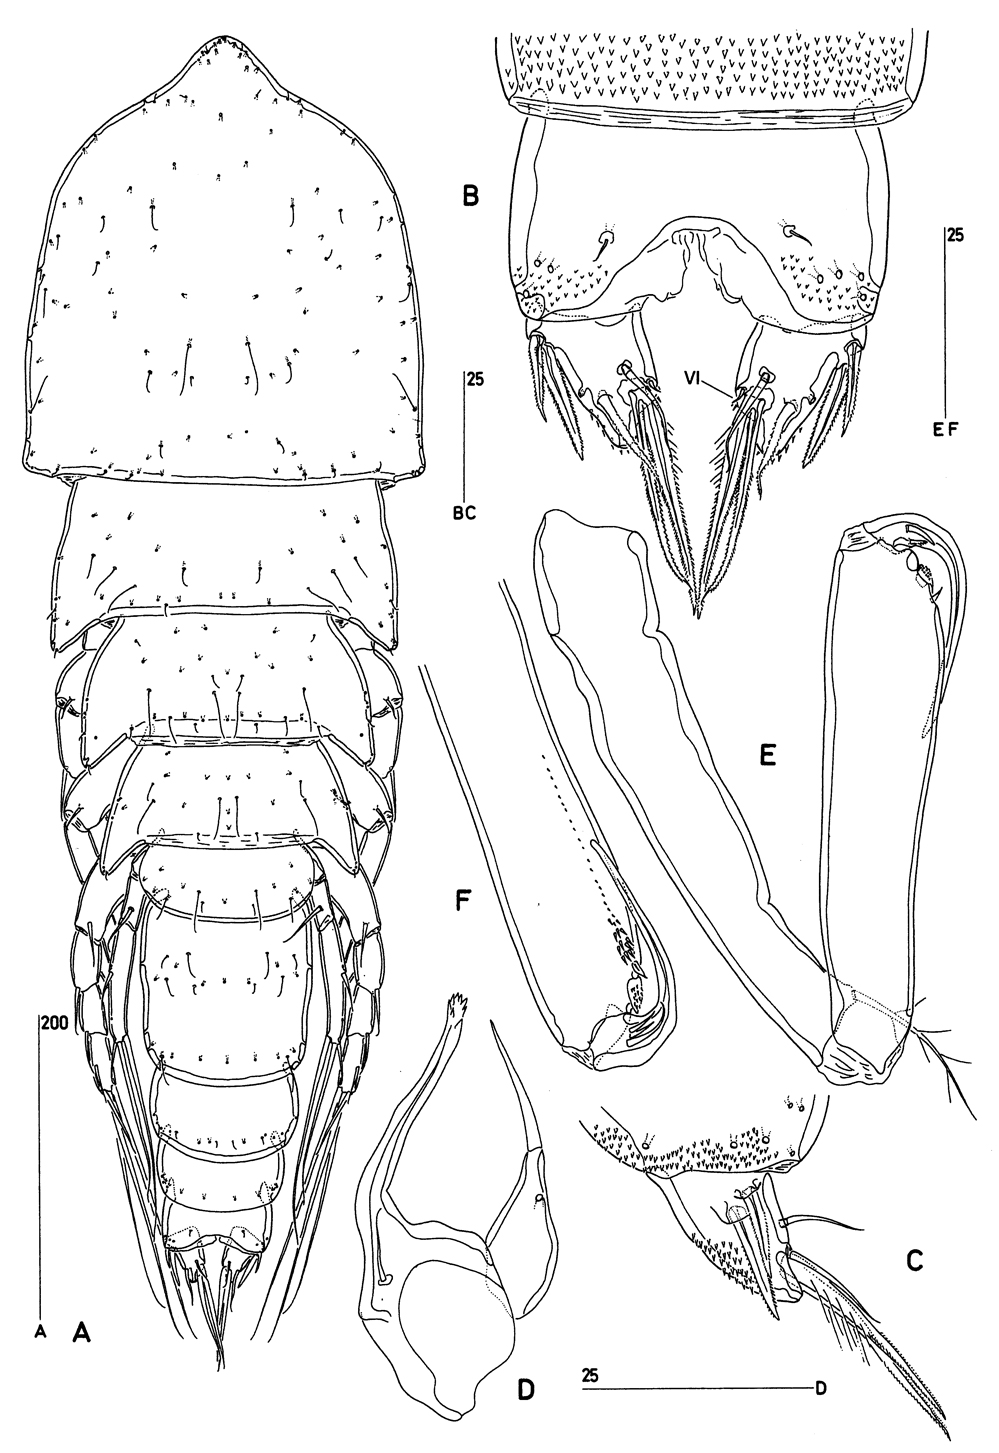 Espèce Goniopsyllus brasiliensis - Planche 1 de figures morphologiques